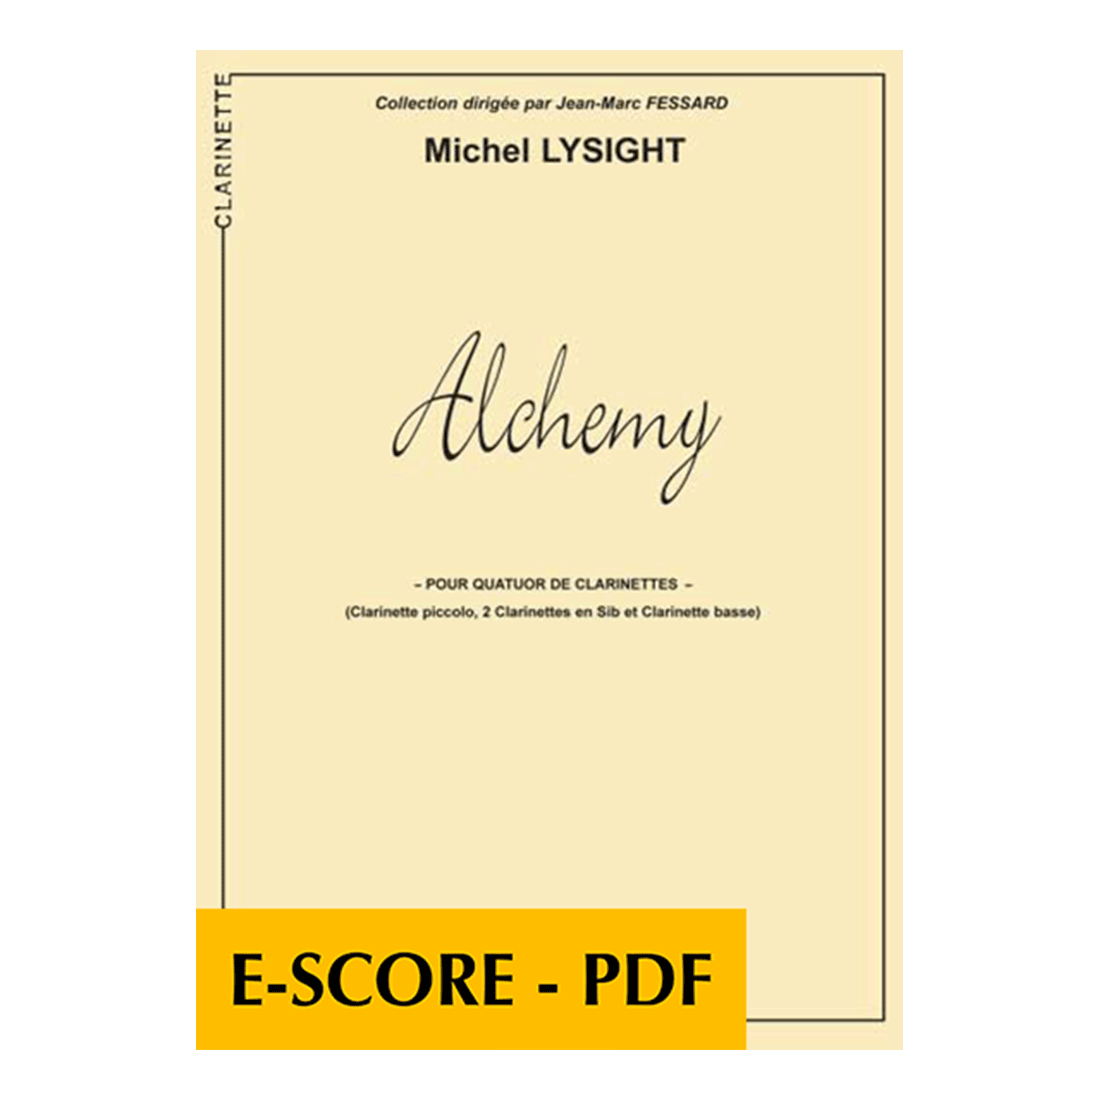 Alchemy for clarinet quartet - E-score PDF